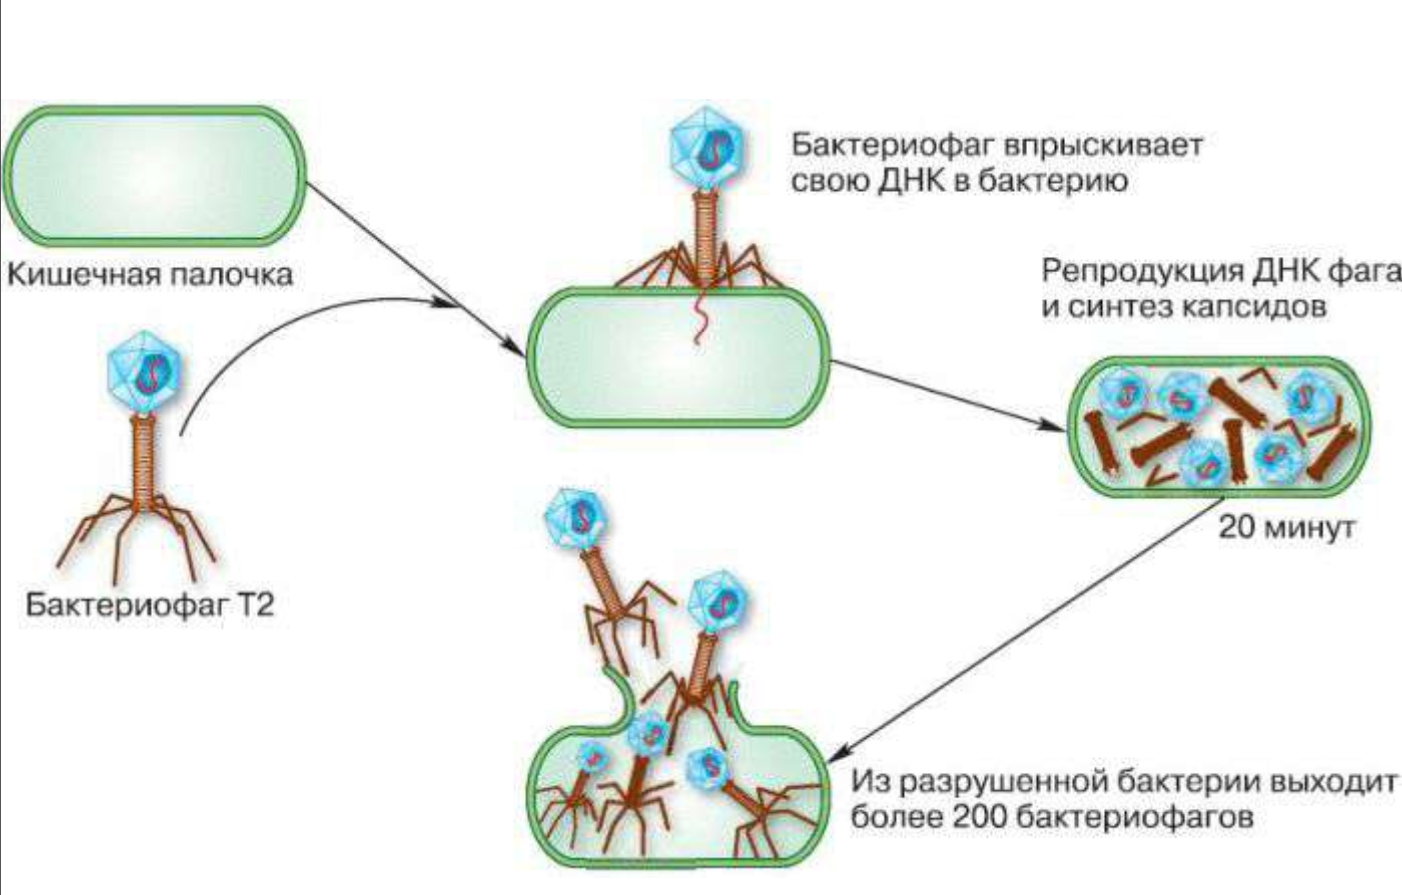 Цикл бактерии. Схема взаимодействия бактериофага с клеткой. Схема взаимодействия бактериофага с бактериальной клеткой. Размножение вируса бактериофага. Механизмы взаимодействия бактериофага с микробной клеткой.